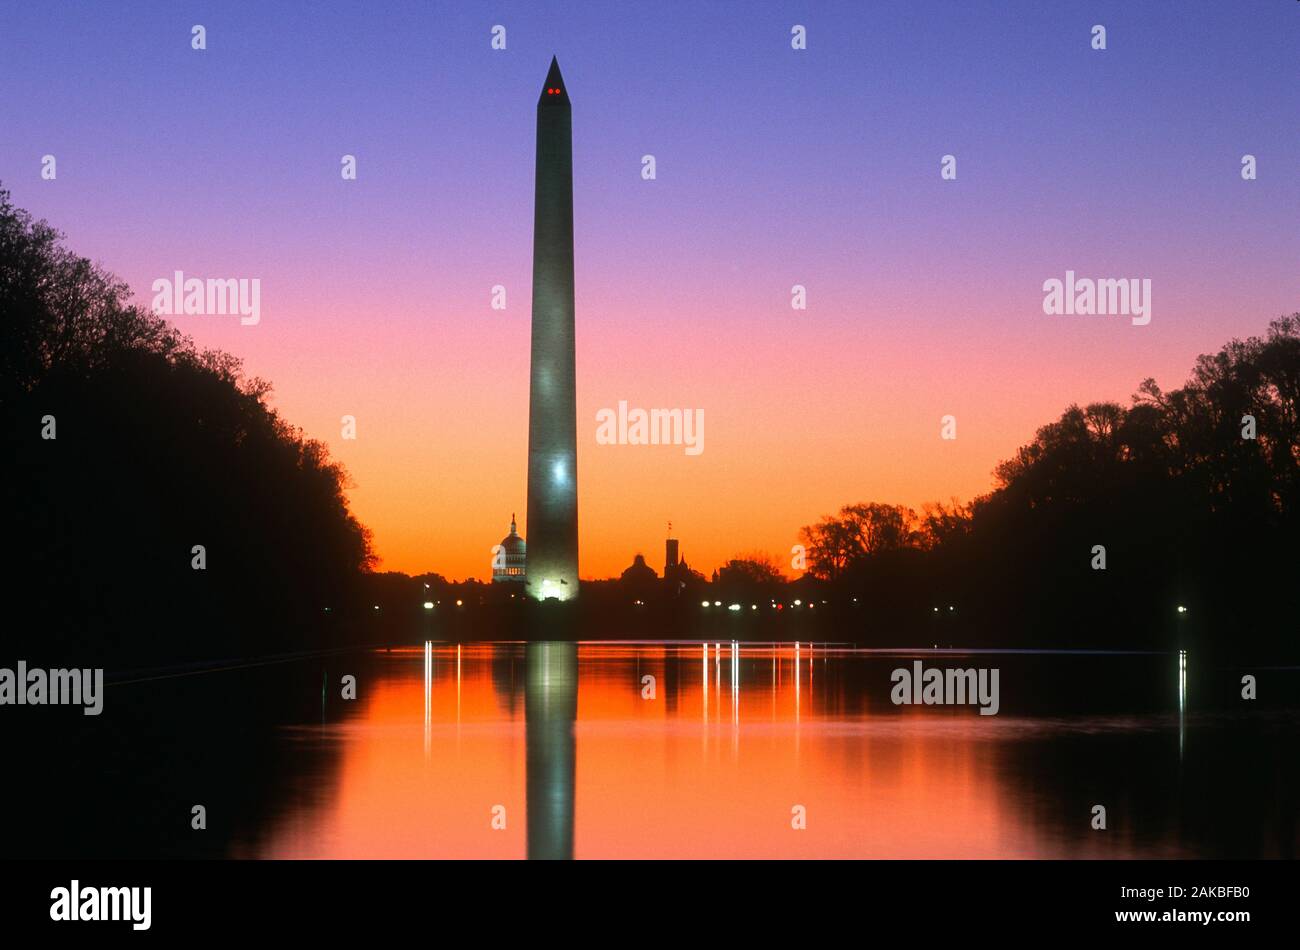 Washington Monument at dusk, Washington DC, USA Stock Photo